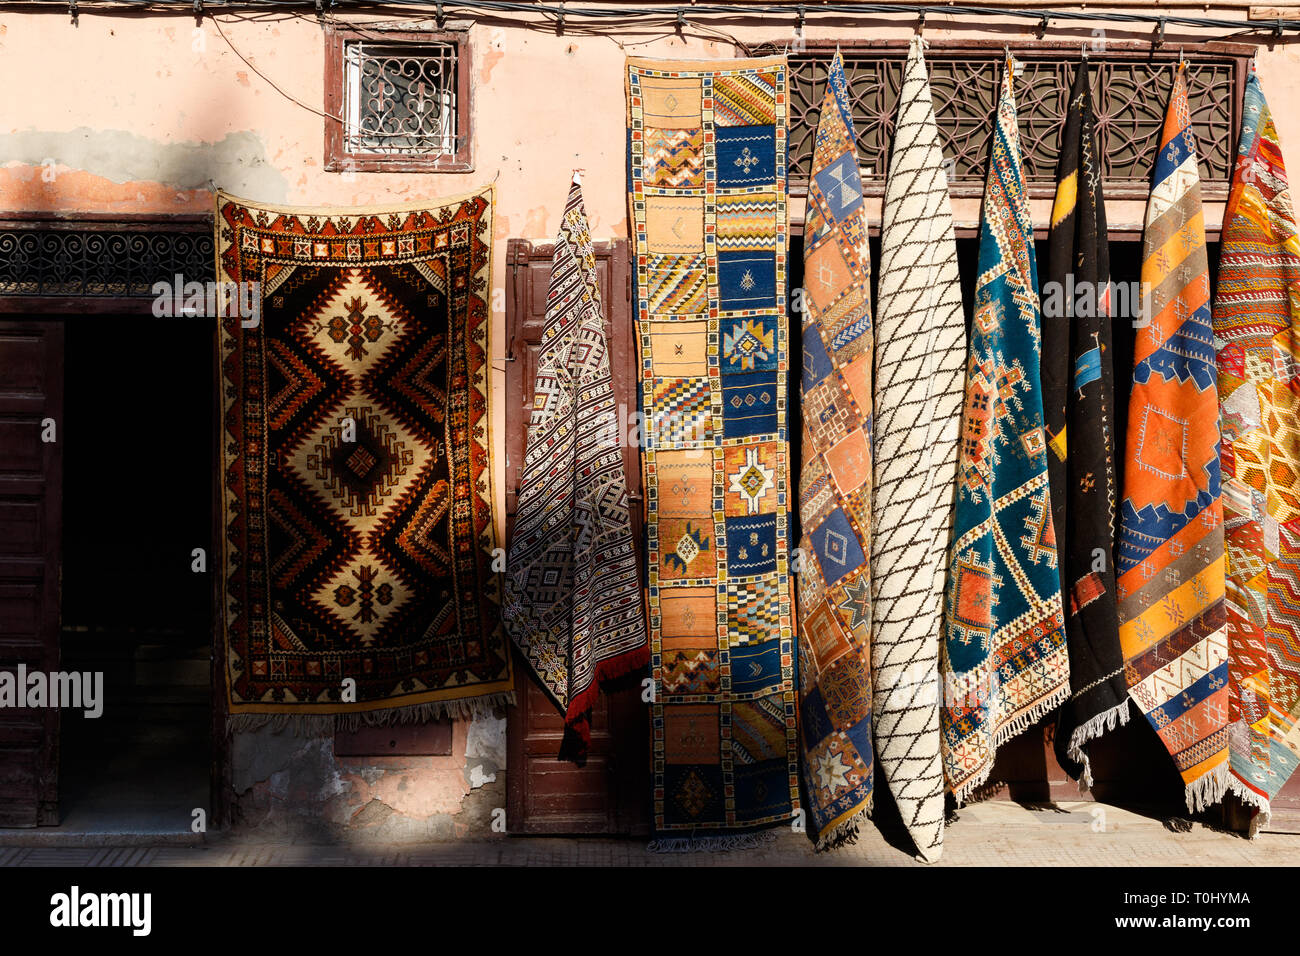 Handcrafted árabe tradicional de cobre, cuero, lana y trabajo en el bazar en Marrakech, Marruecos, África Foto de stock